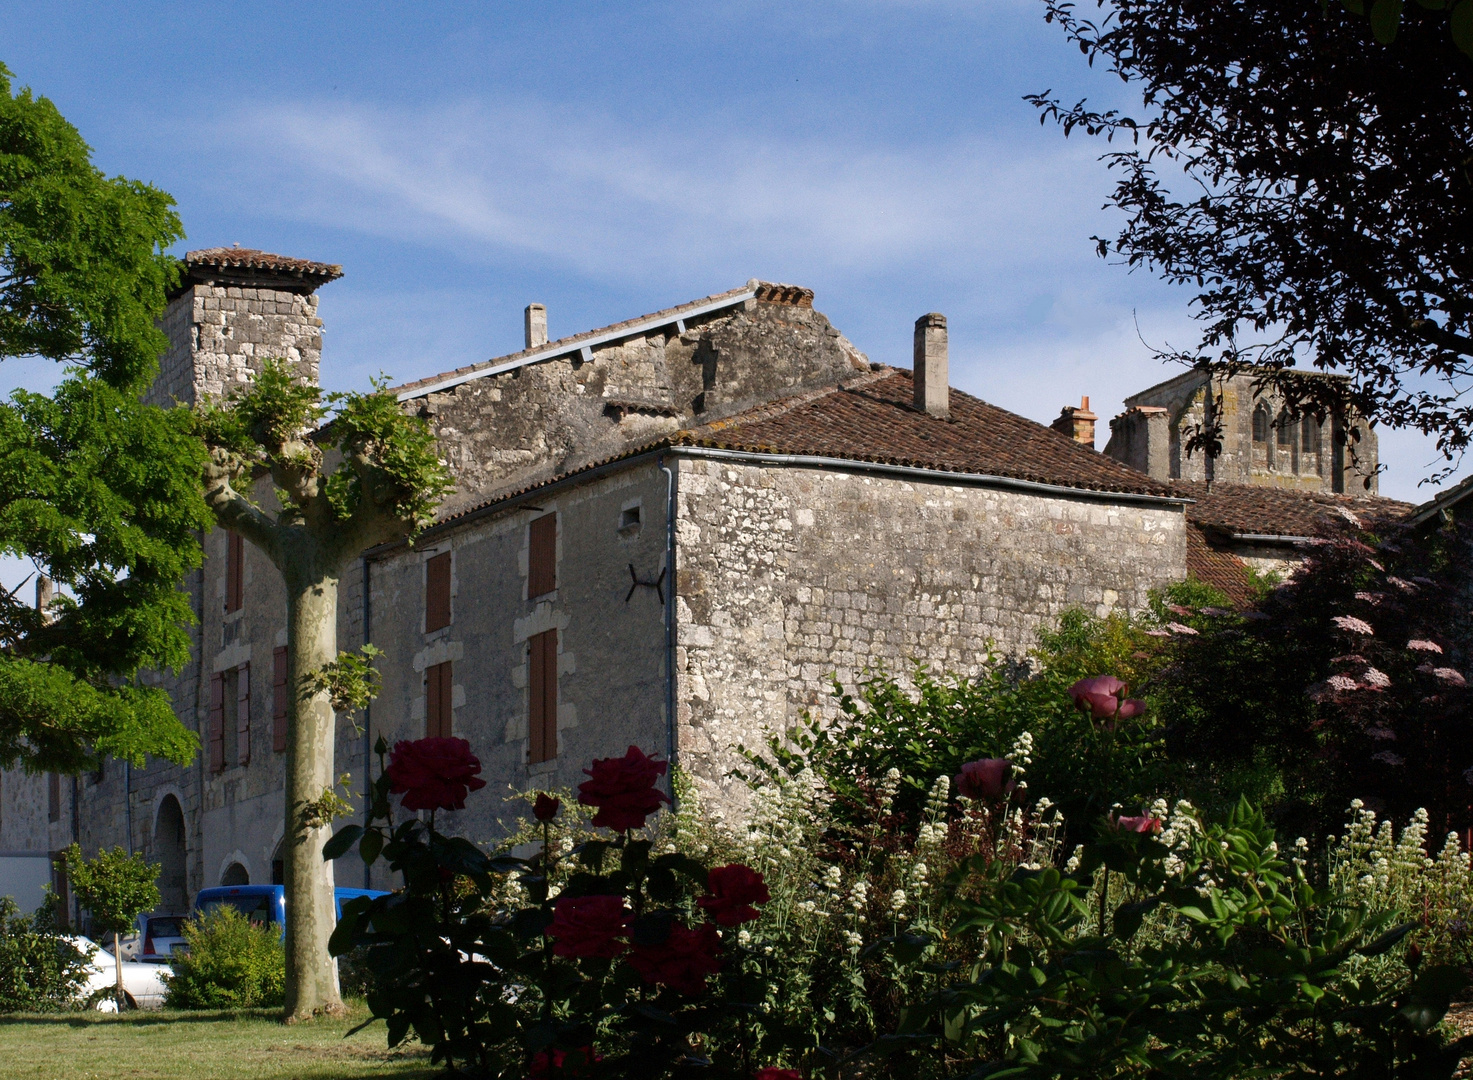 La Romieu – Une des portes du village fortifié – Eins der Tore des befestigten Dorfes